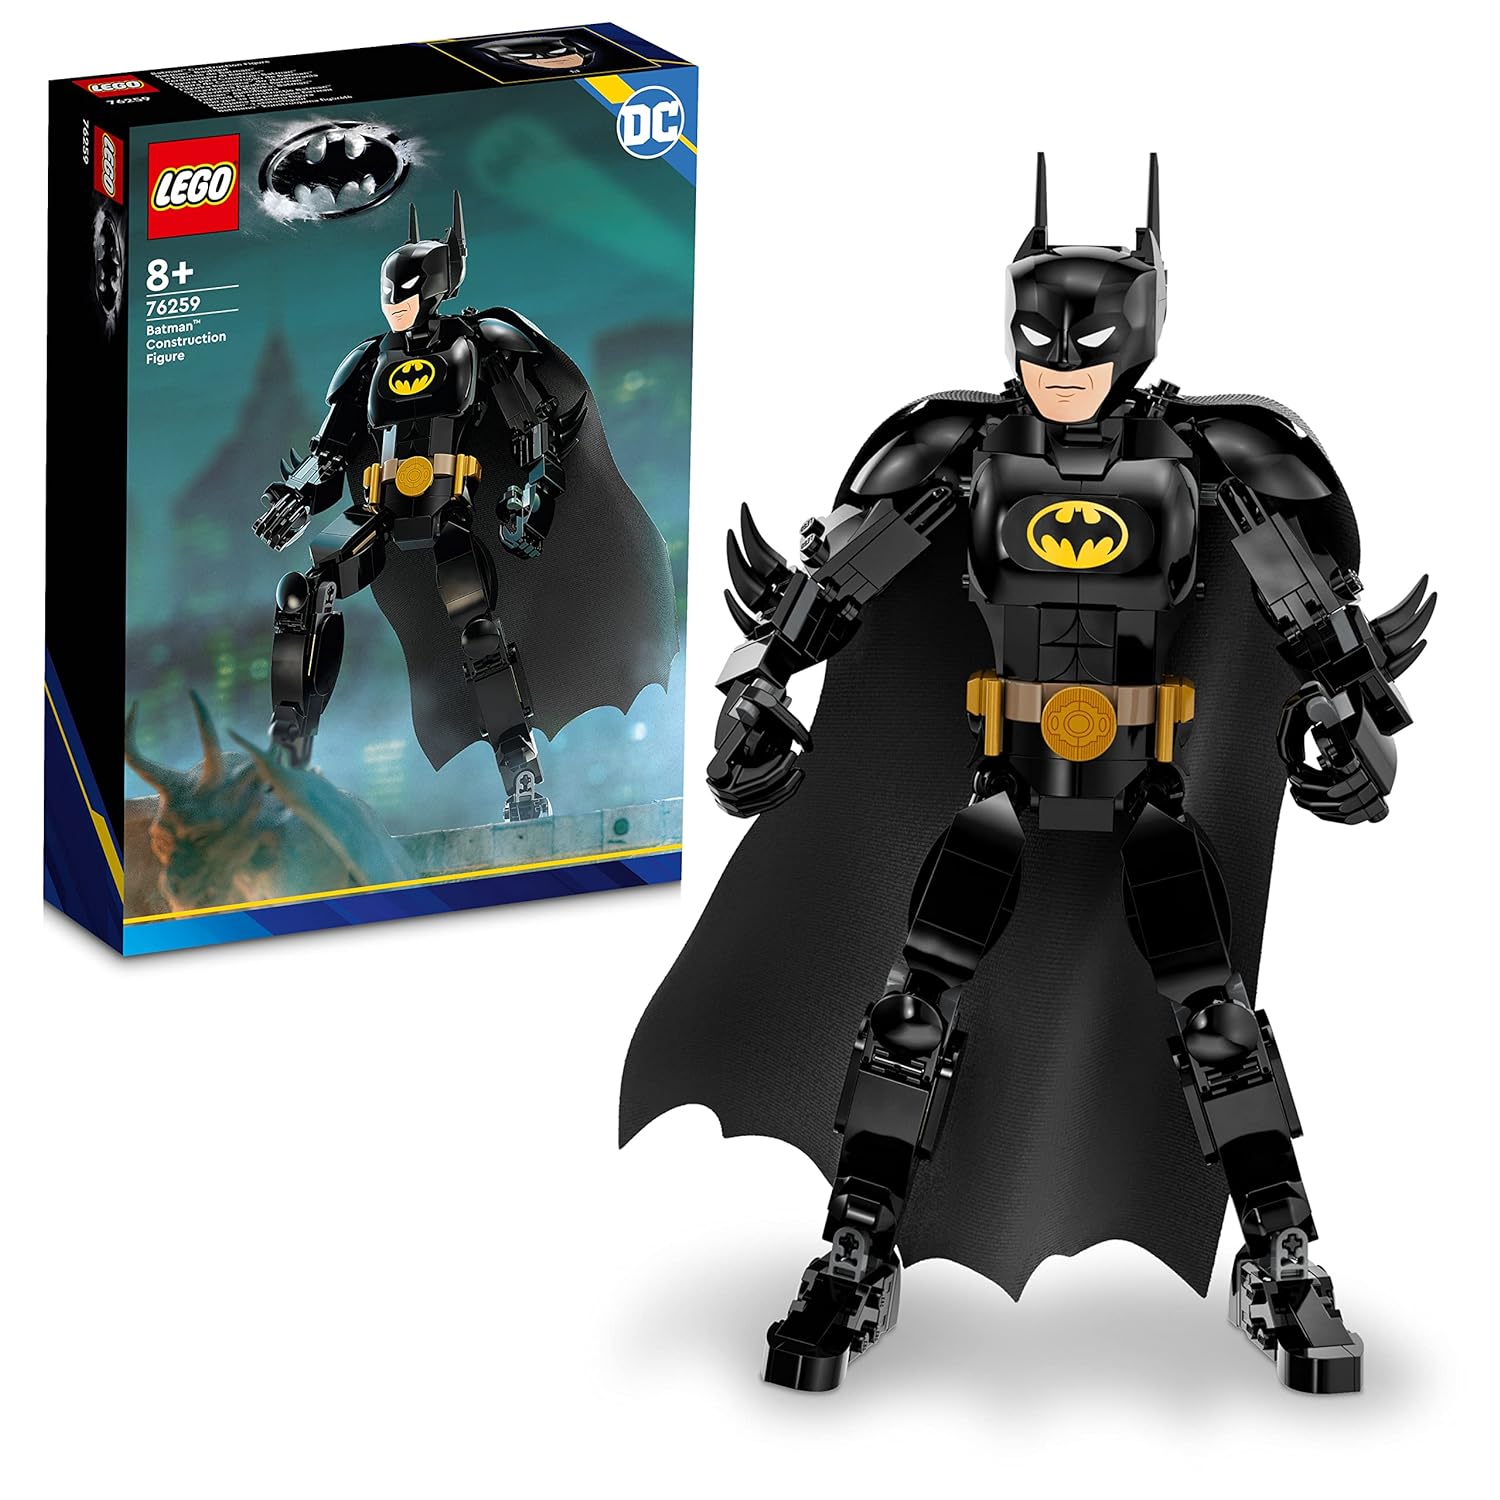 LEGO DC Batman Construction Figure Building Kit for Ages 8+